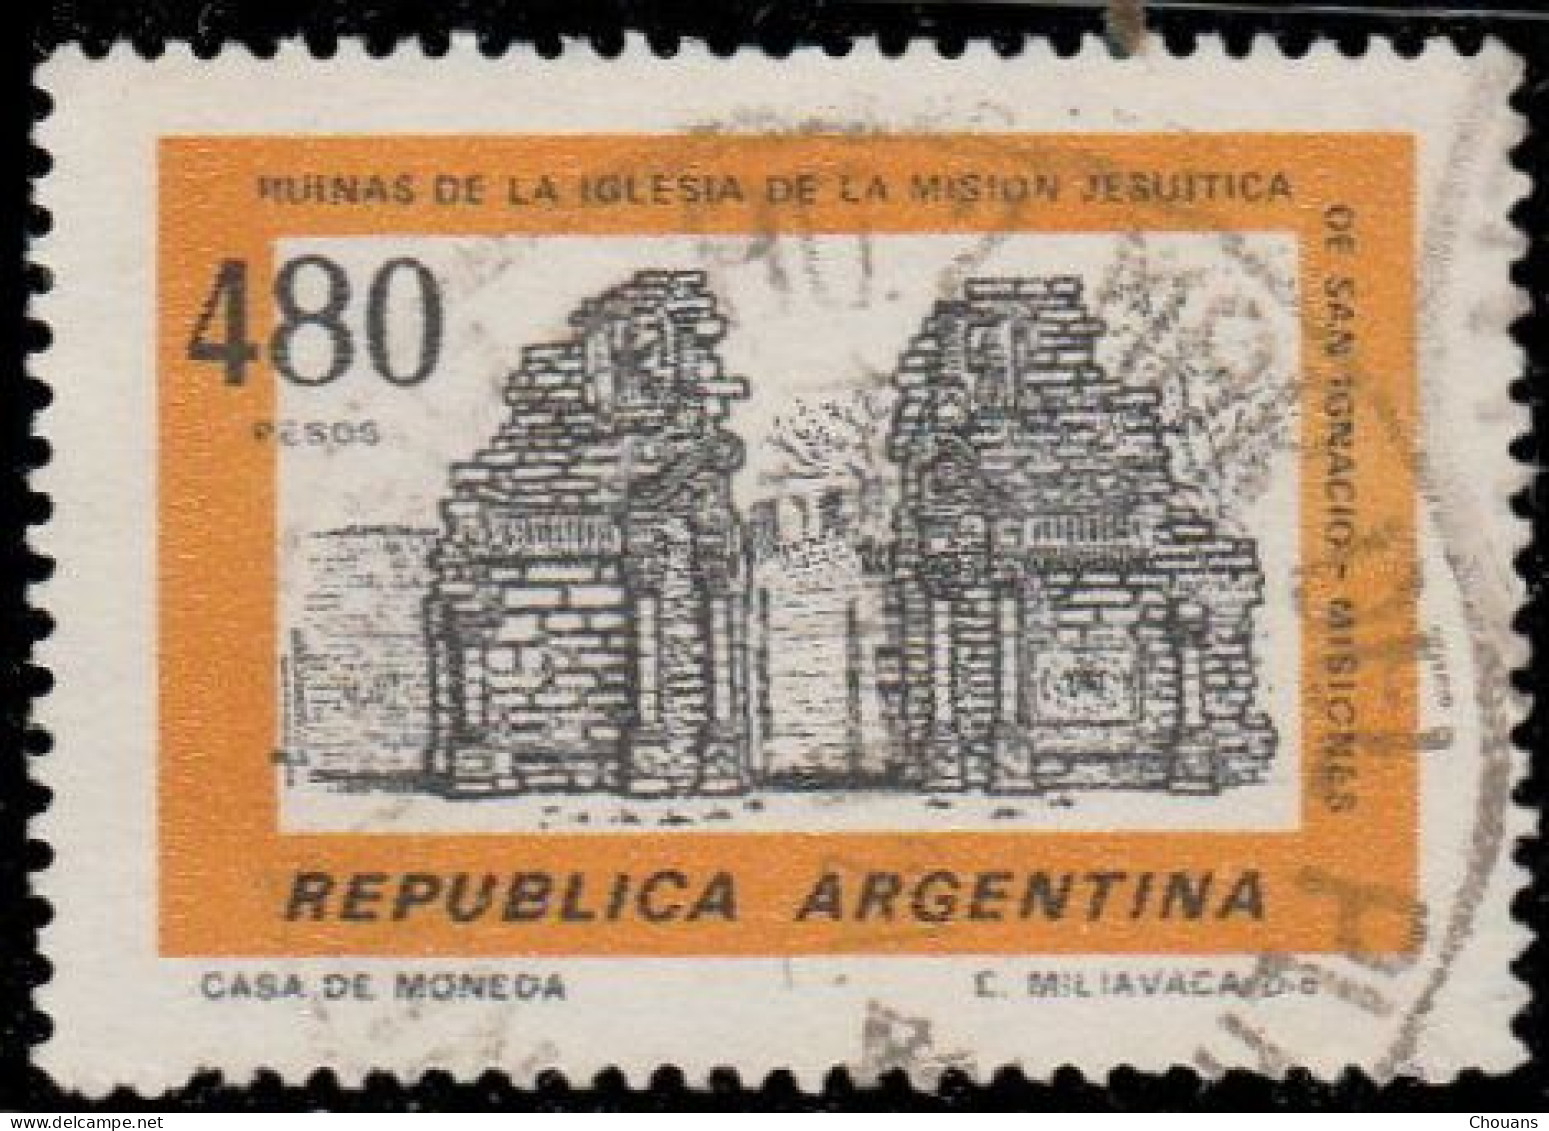 Argentine 1978. ~ YT 1128 +1129x4 +1130x9 + 1132x9 + 1133x2 + 1135 + 1136x9 + 1138x8  (43 v)